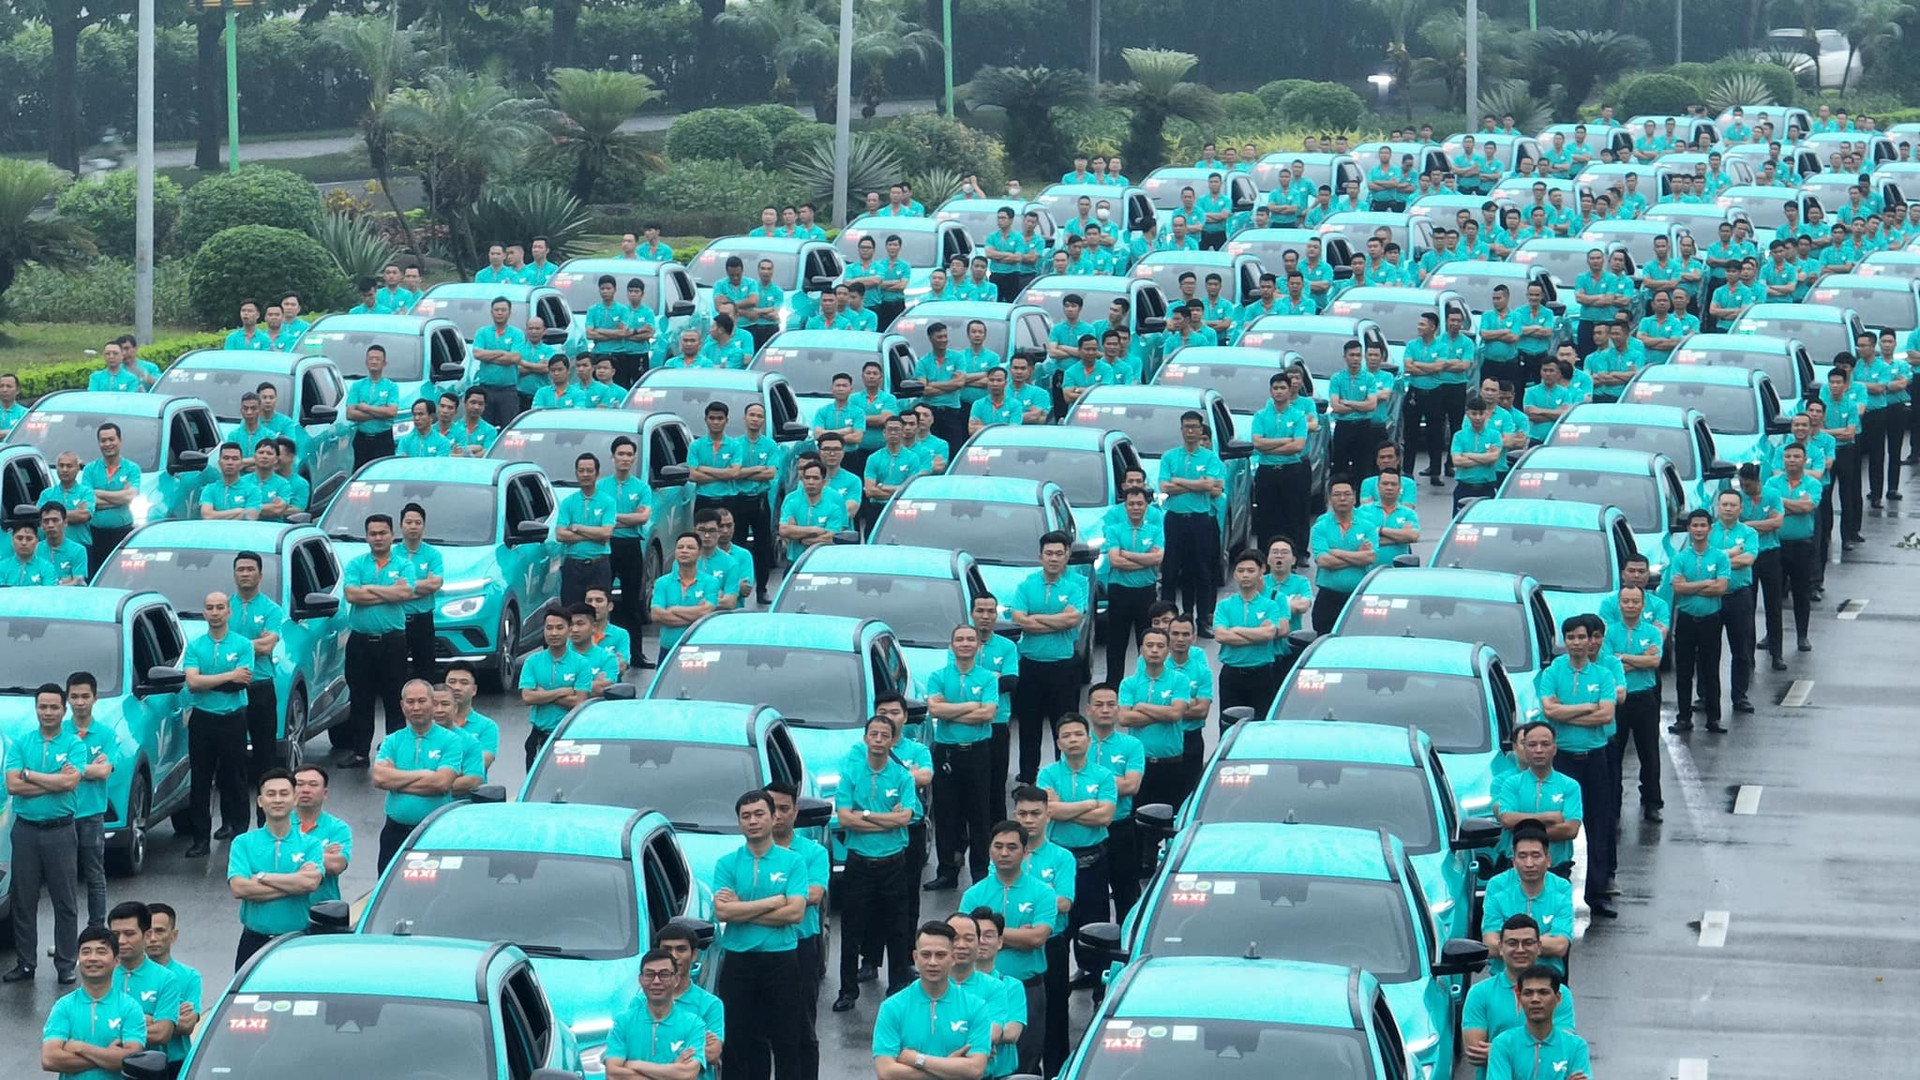 Tốc độ tăng trưởng quy mô nhân sự thần tốc của taxi xanh GSM: Dự kiến chạm mốc 20.000 người sau chưa đầy 1 năm, hoạt động tại 3 quốc gia - Ảnh 1.